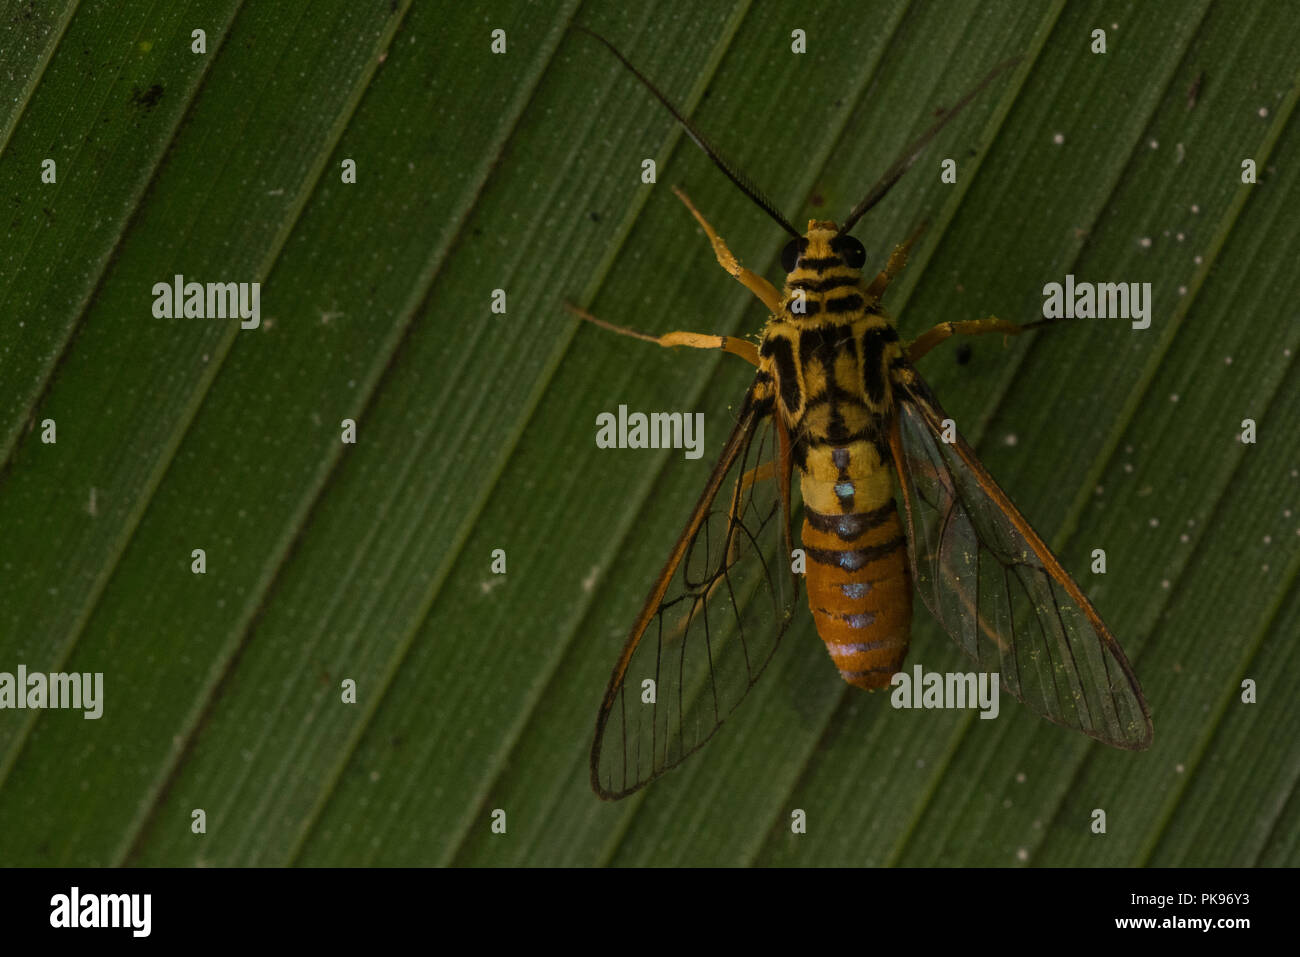 Un innocuo clearwing moth, imita una sensazione puntoria wasp allo scopo di dissuadere i potenziali predatori. Foto Stock